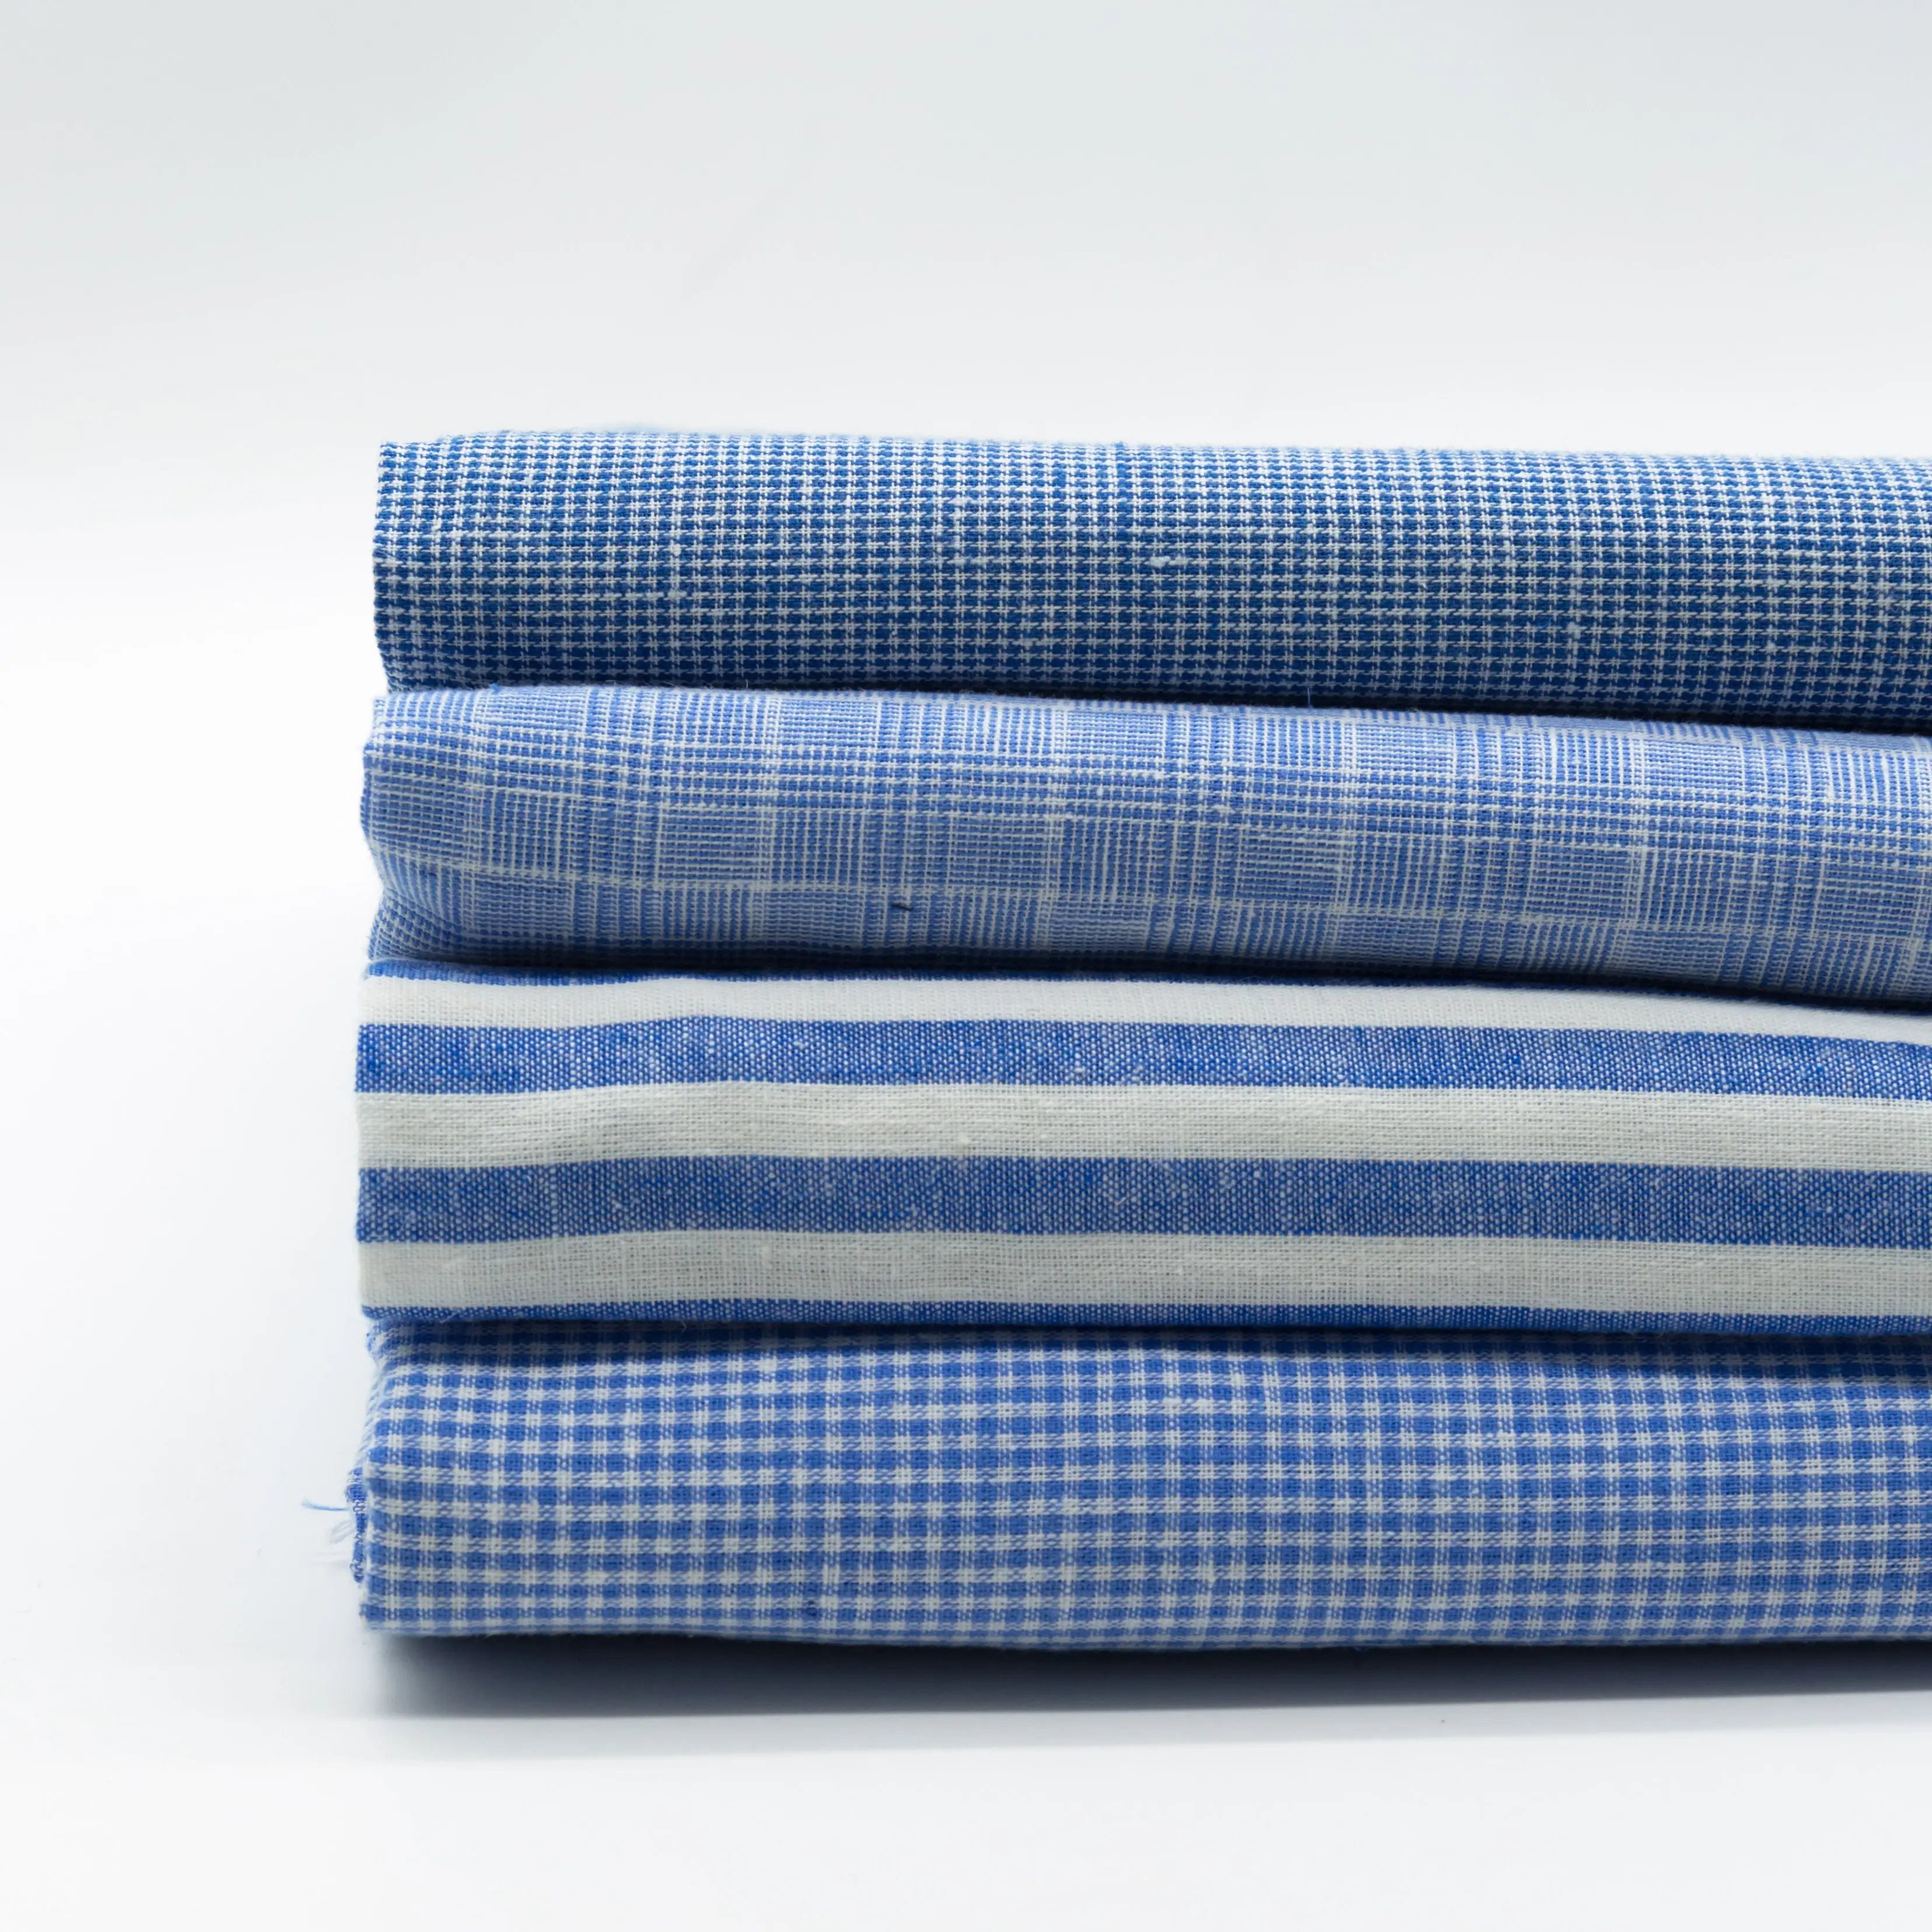 Super heiß verkaufter Leinen Baumwollgarn gefärbter blauer Stoff für Hemden